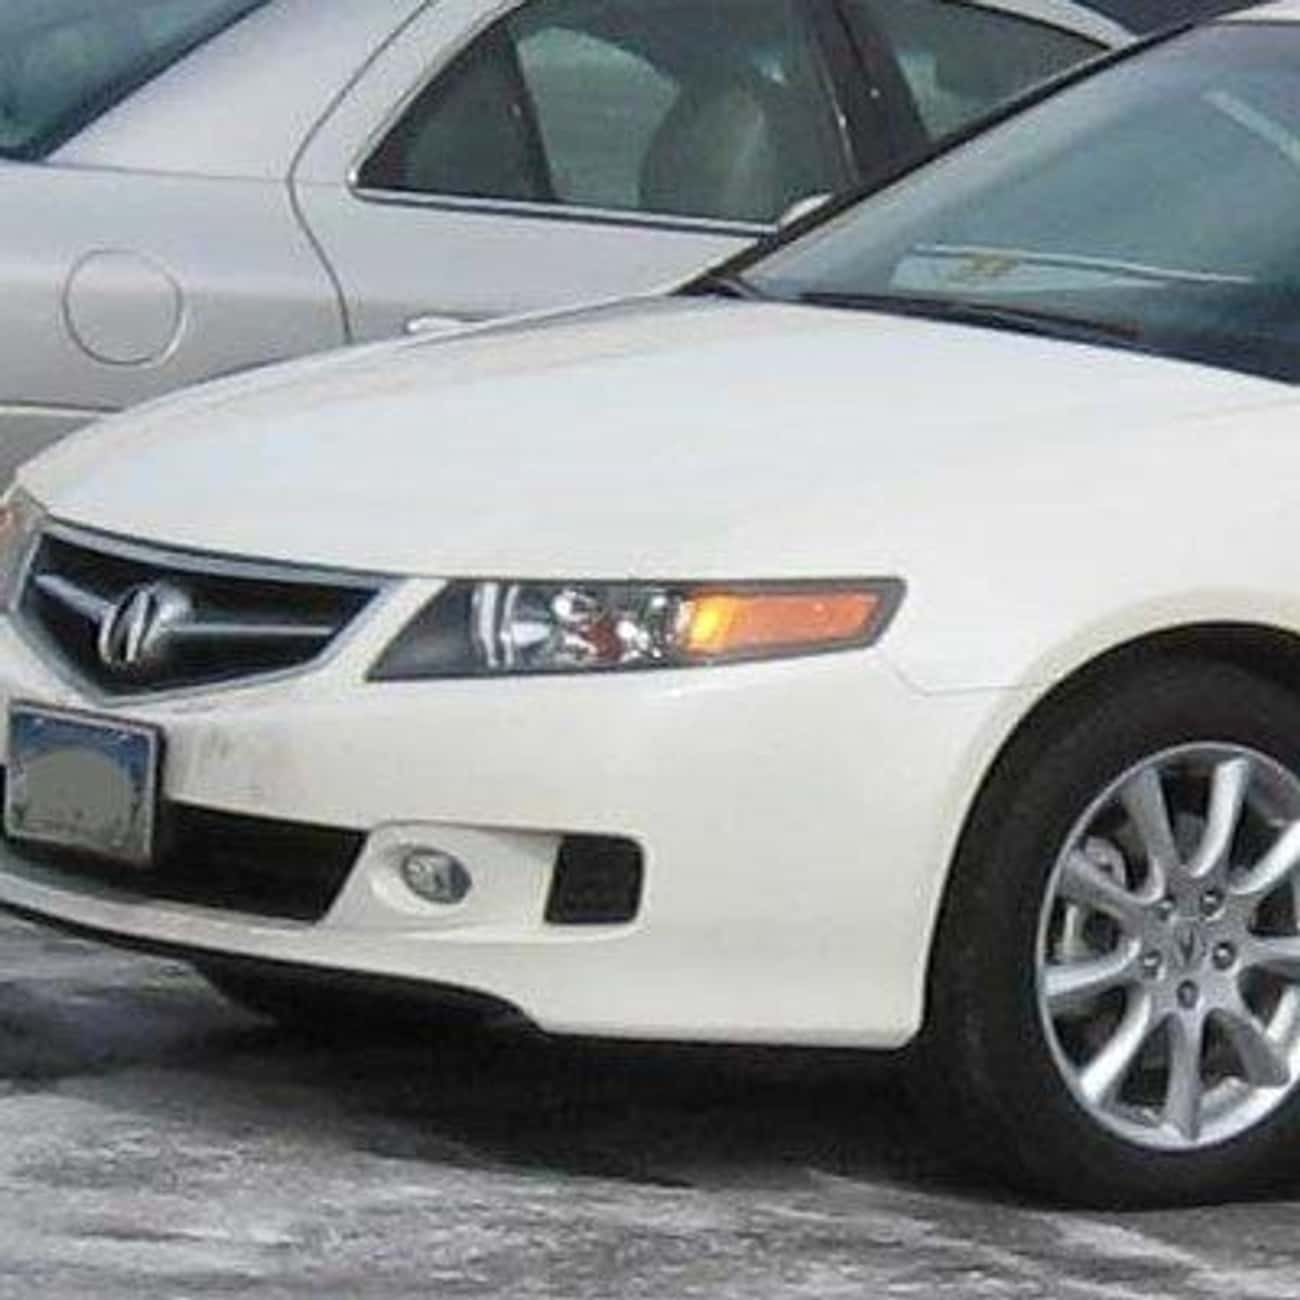 2007 Acura TSX